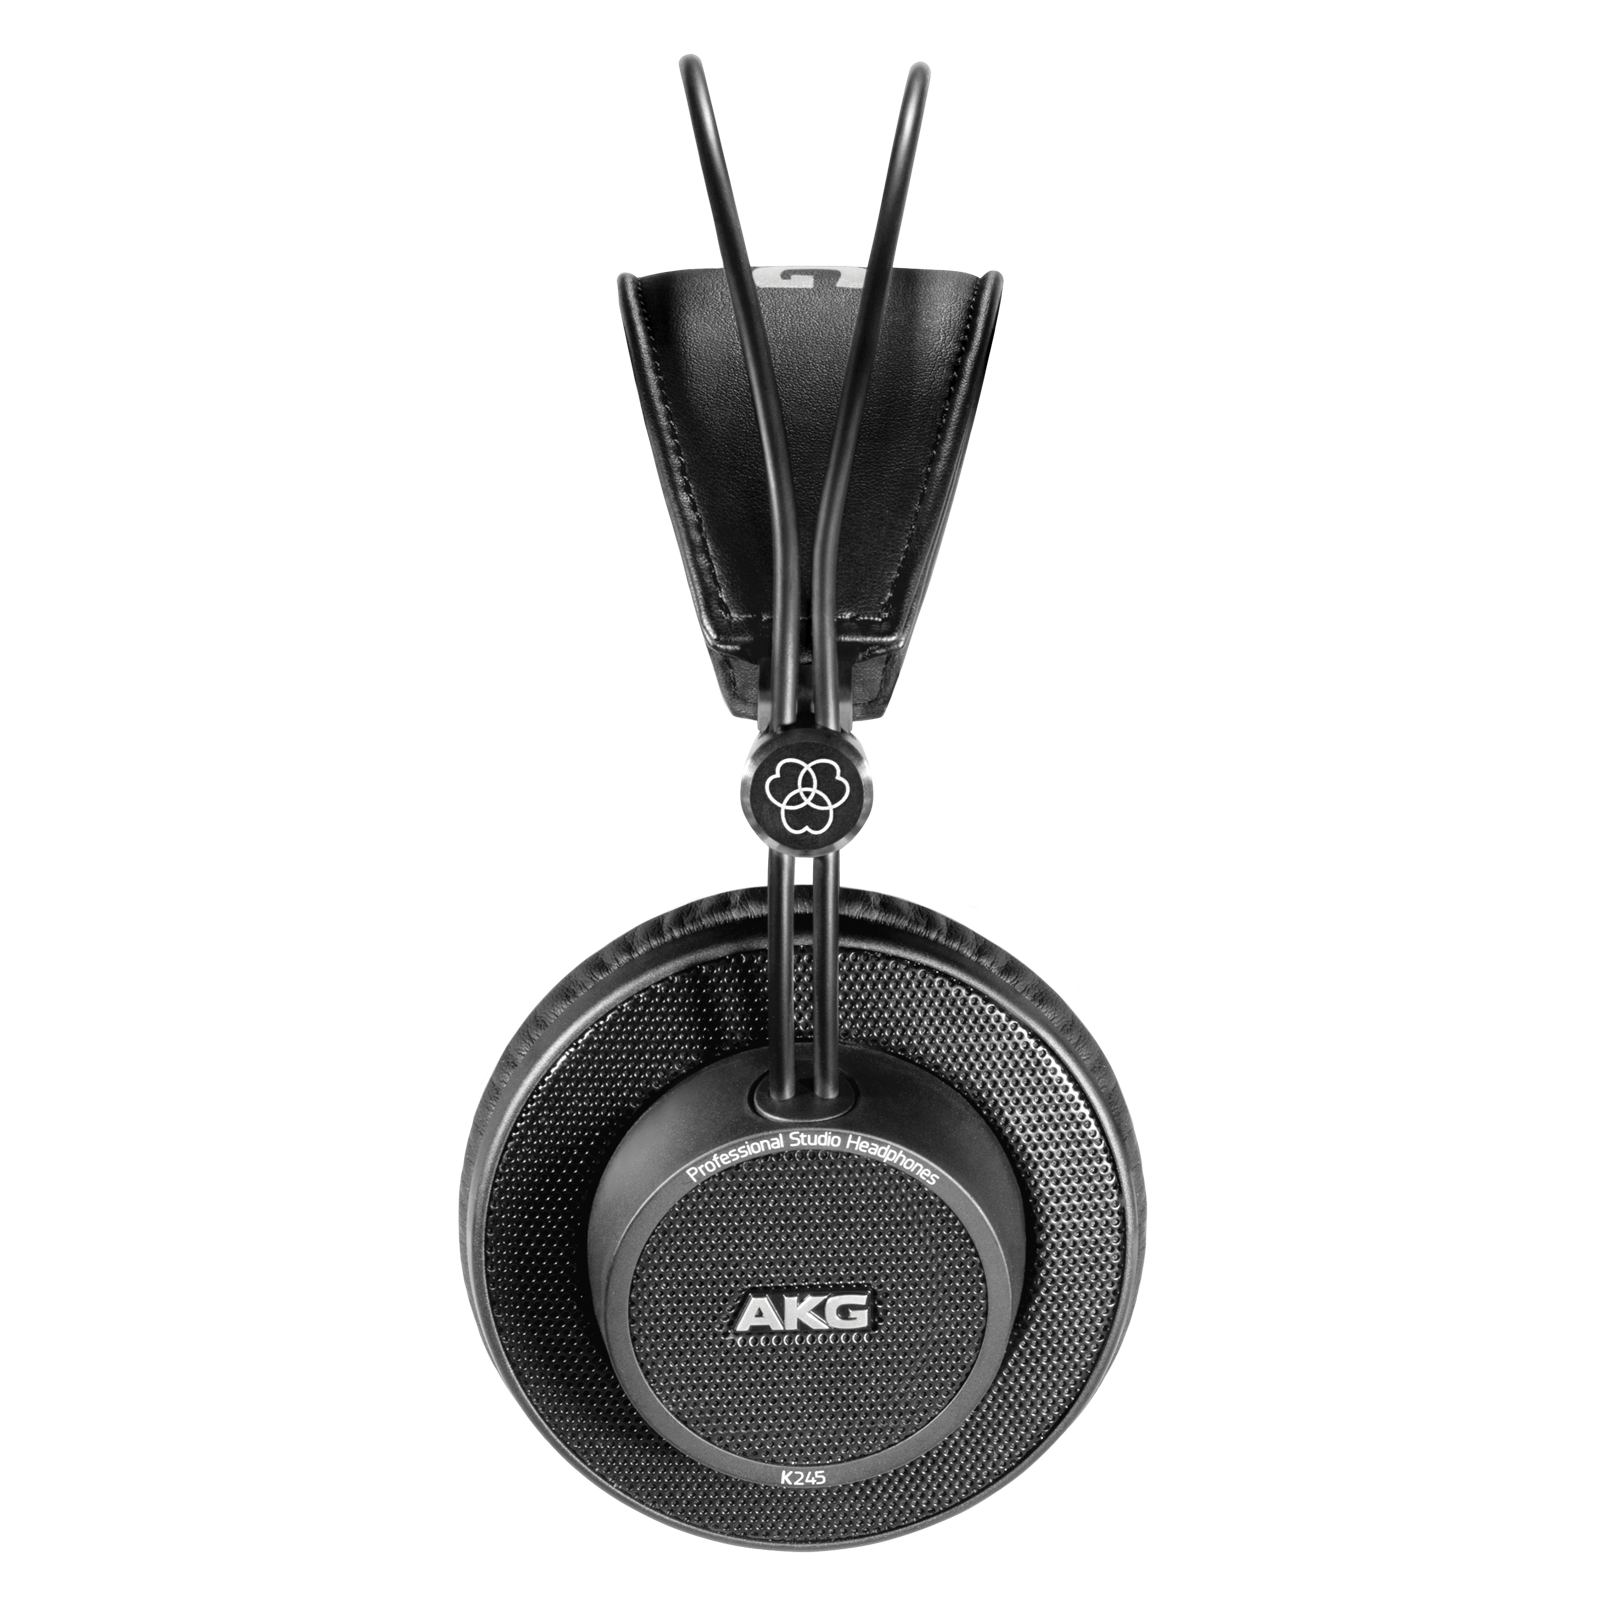 K245 - Black - Over-ear, open-back, foldable studio headphones - Left